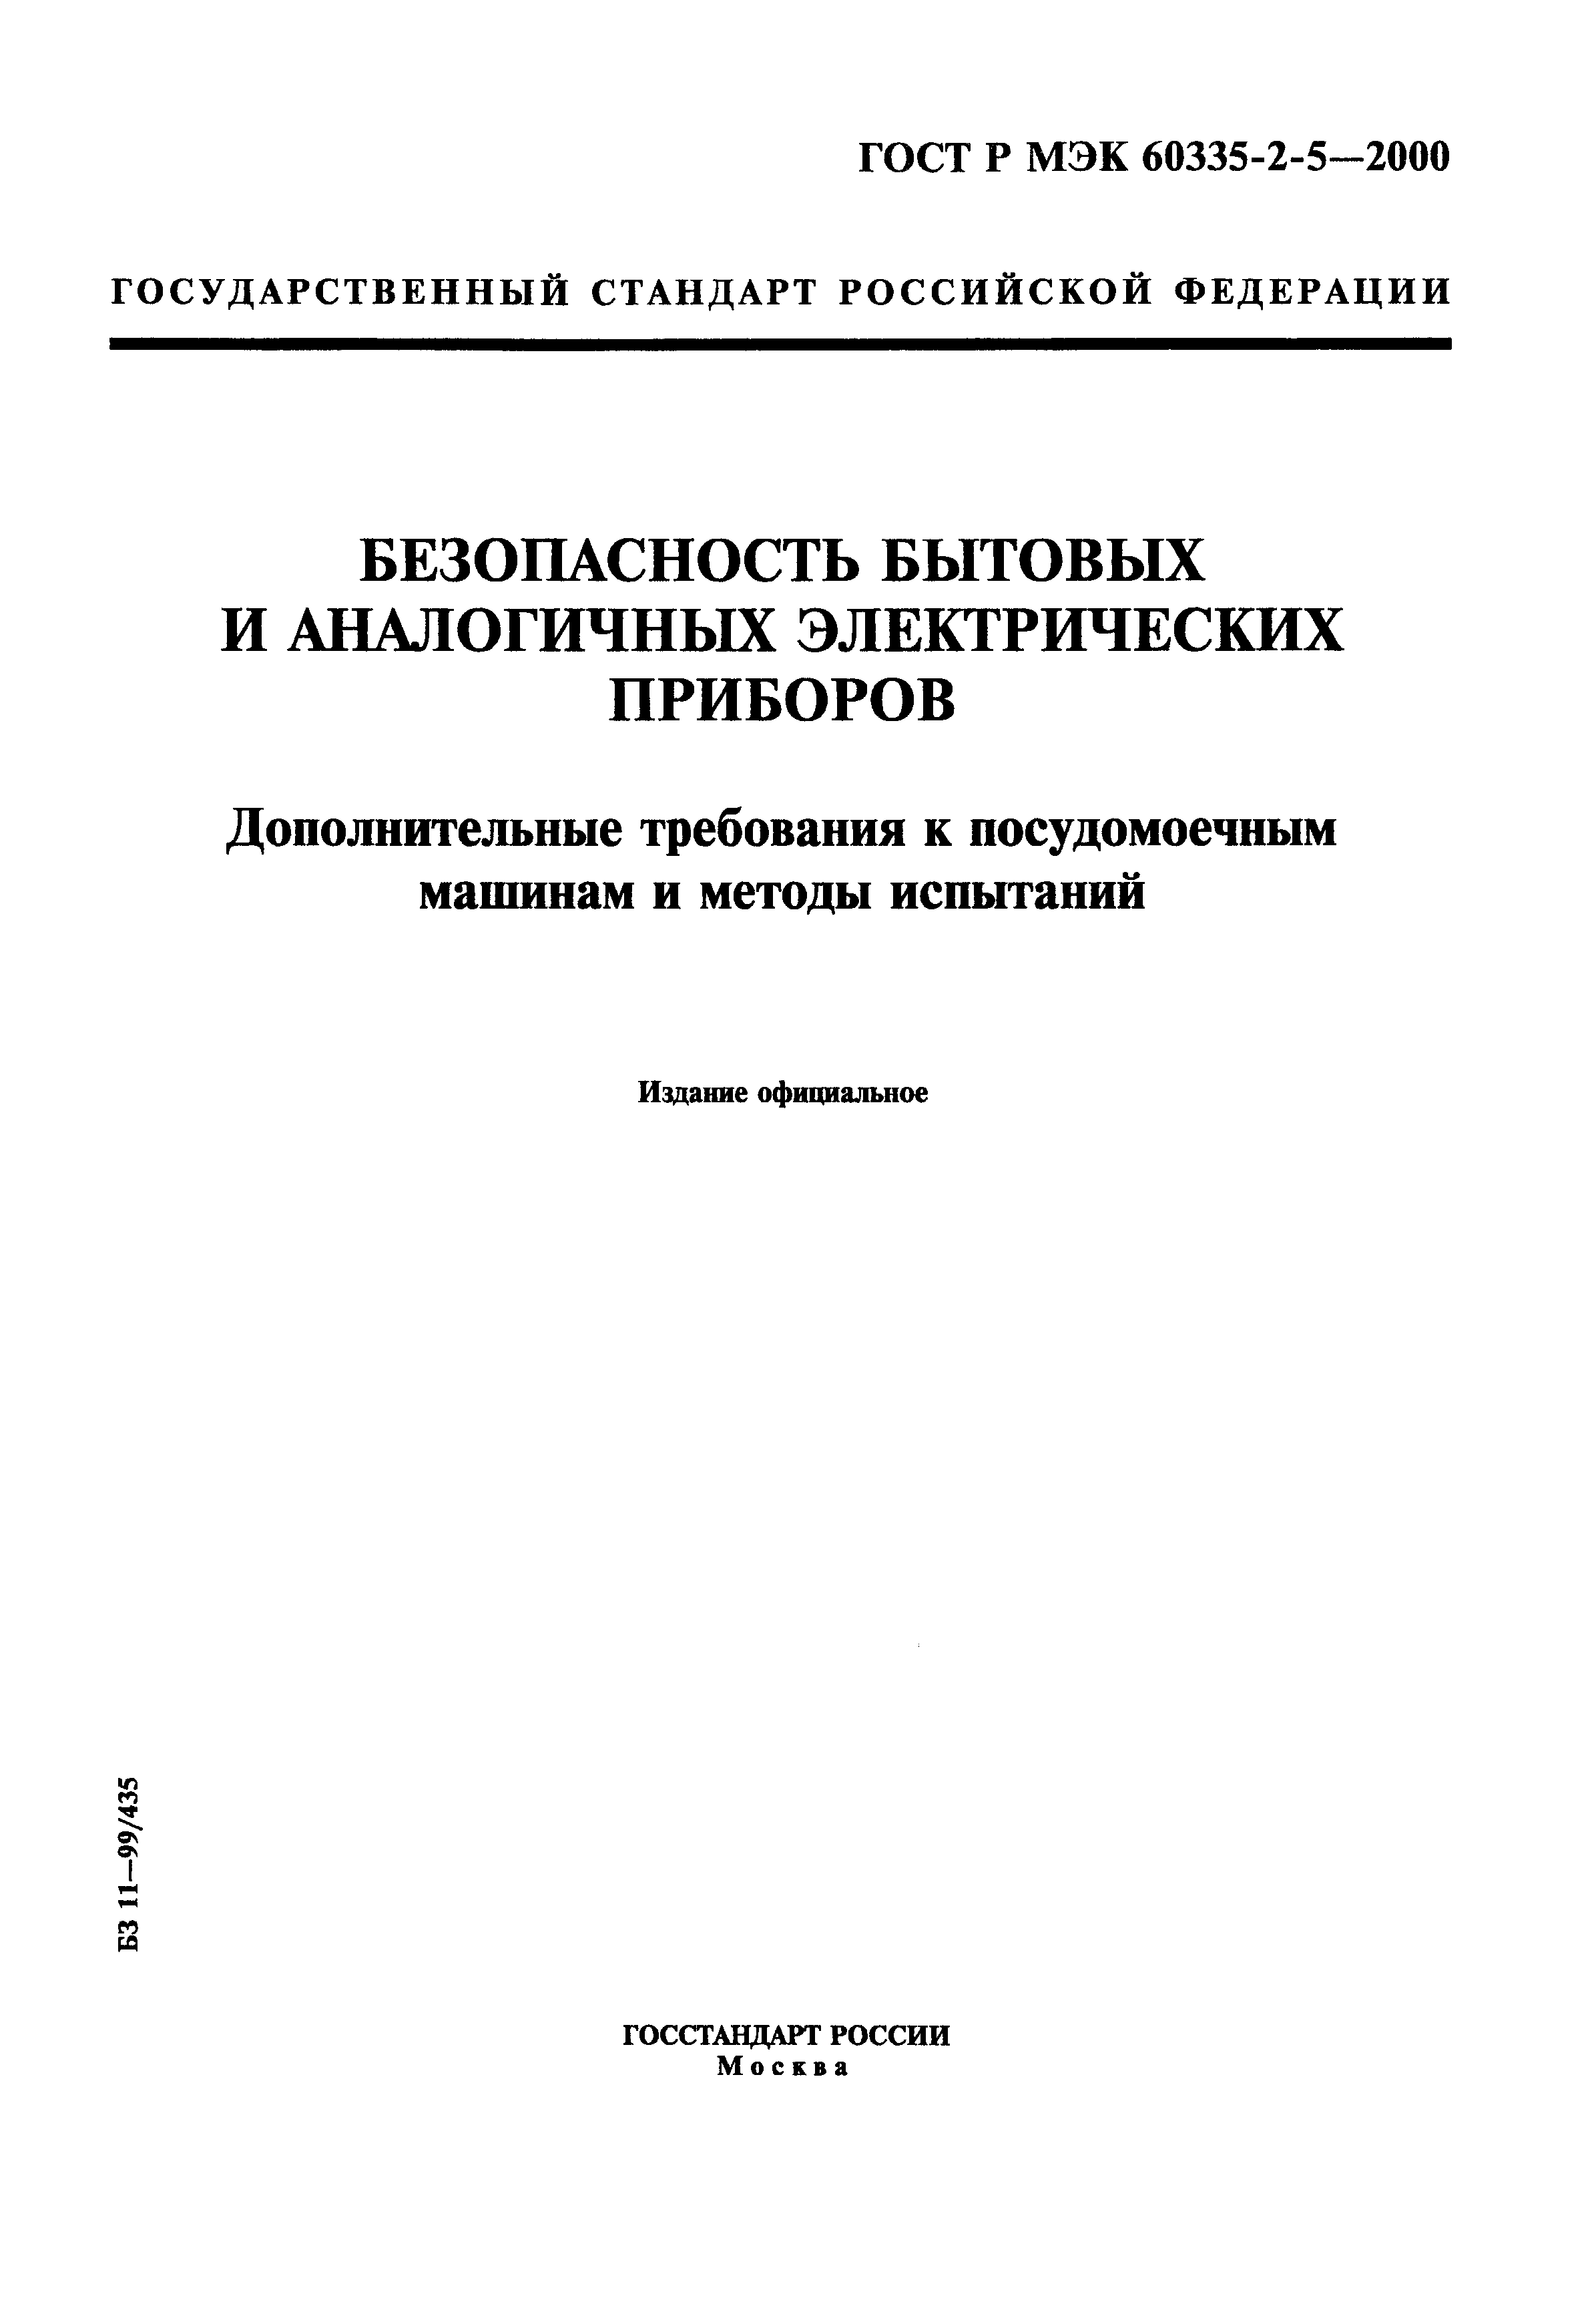 ГОСТ Р МЭК 60335-2-5-2000